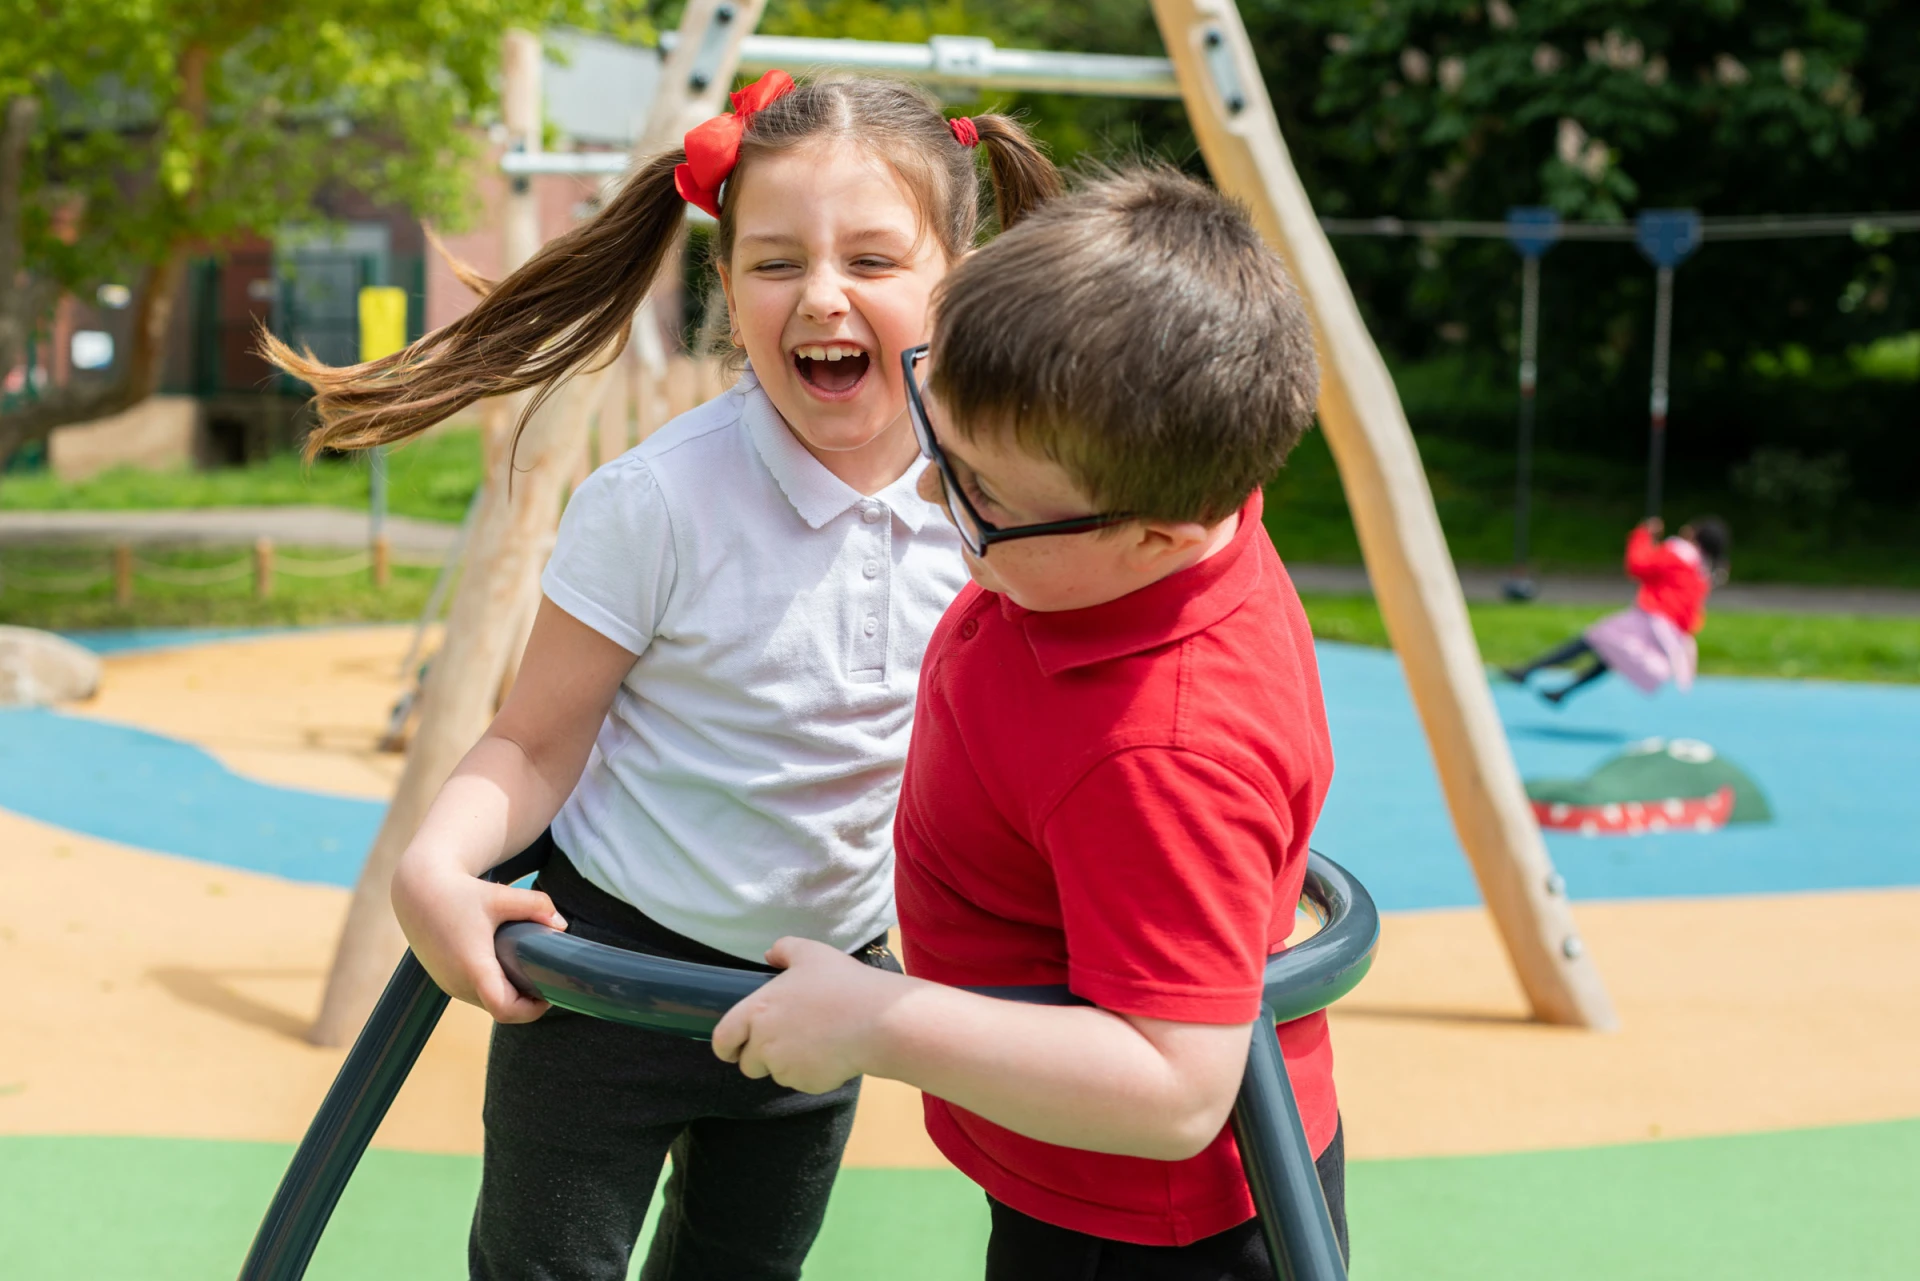 Een jongen en meisje spelen op een speelplaatscarrousel